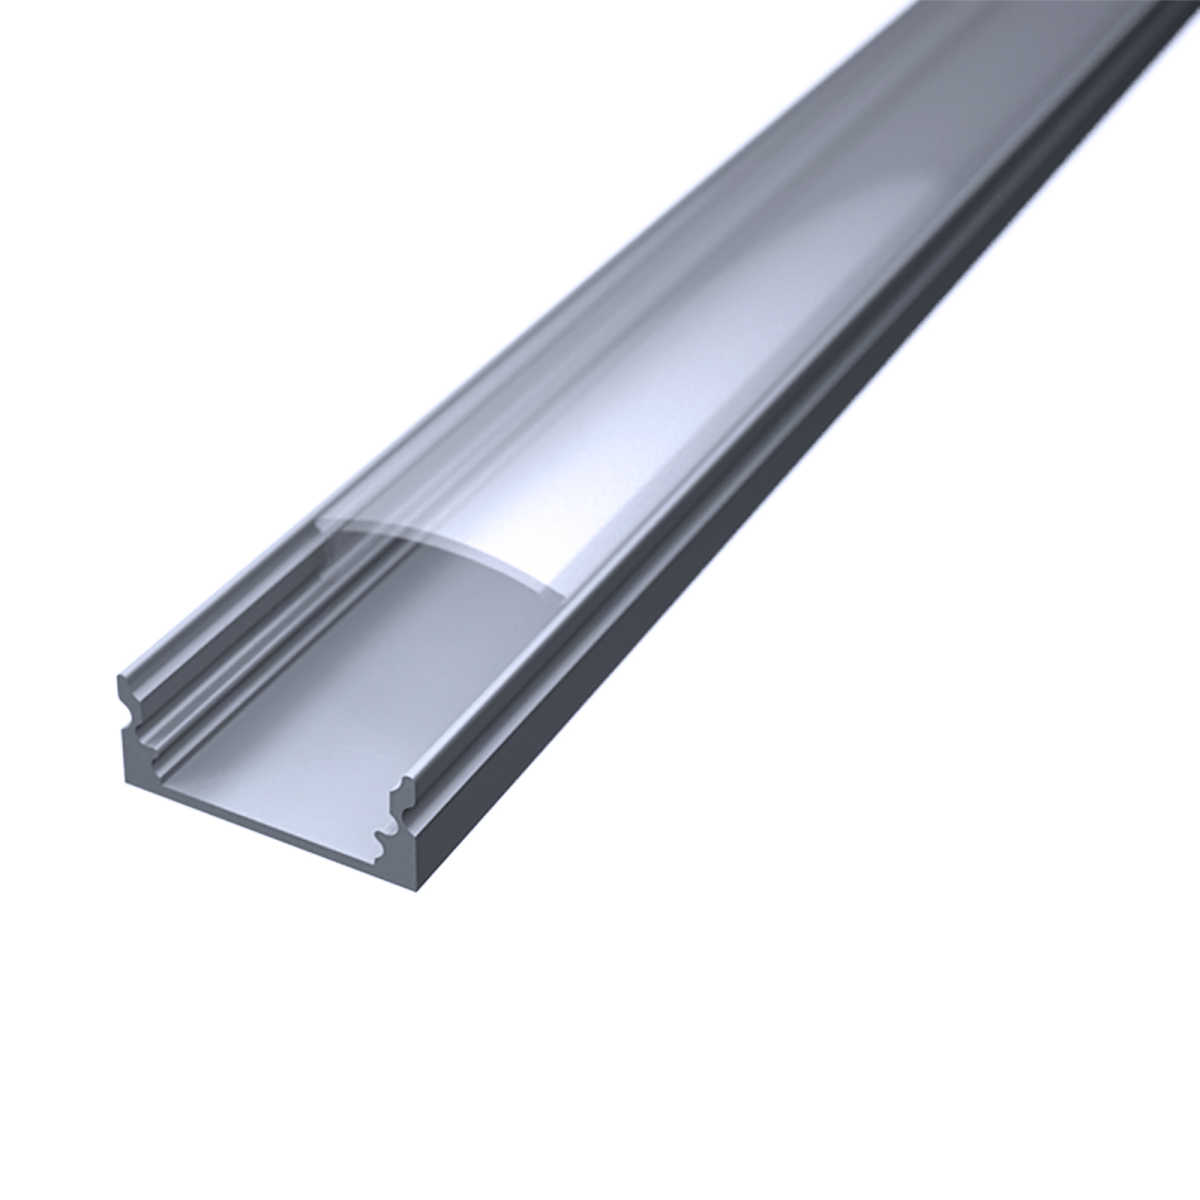 LED Flachprofil "Slim-Line" | Abdeckung transparent | Zuschnitt auf 79cm |